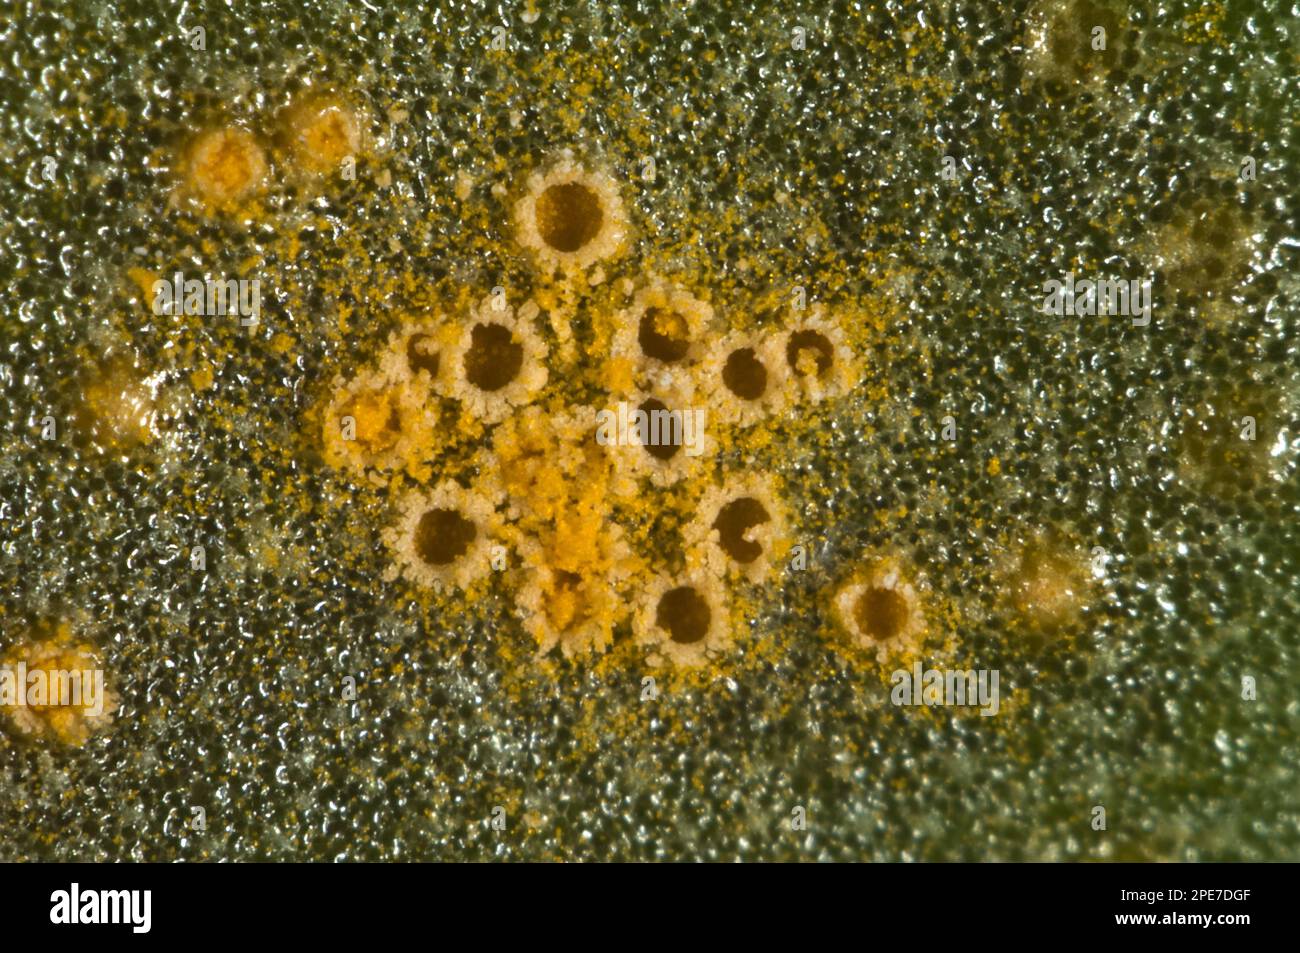 Microfotografía de la aecia del mosto (Senecio vulgaris), Puccinia lagenophorae, en la superficie de la hoja del mosto de la maleza Foto de stock